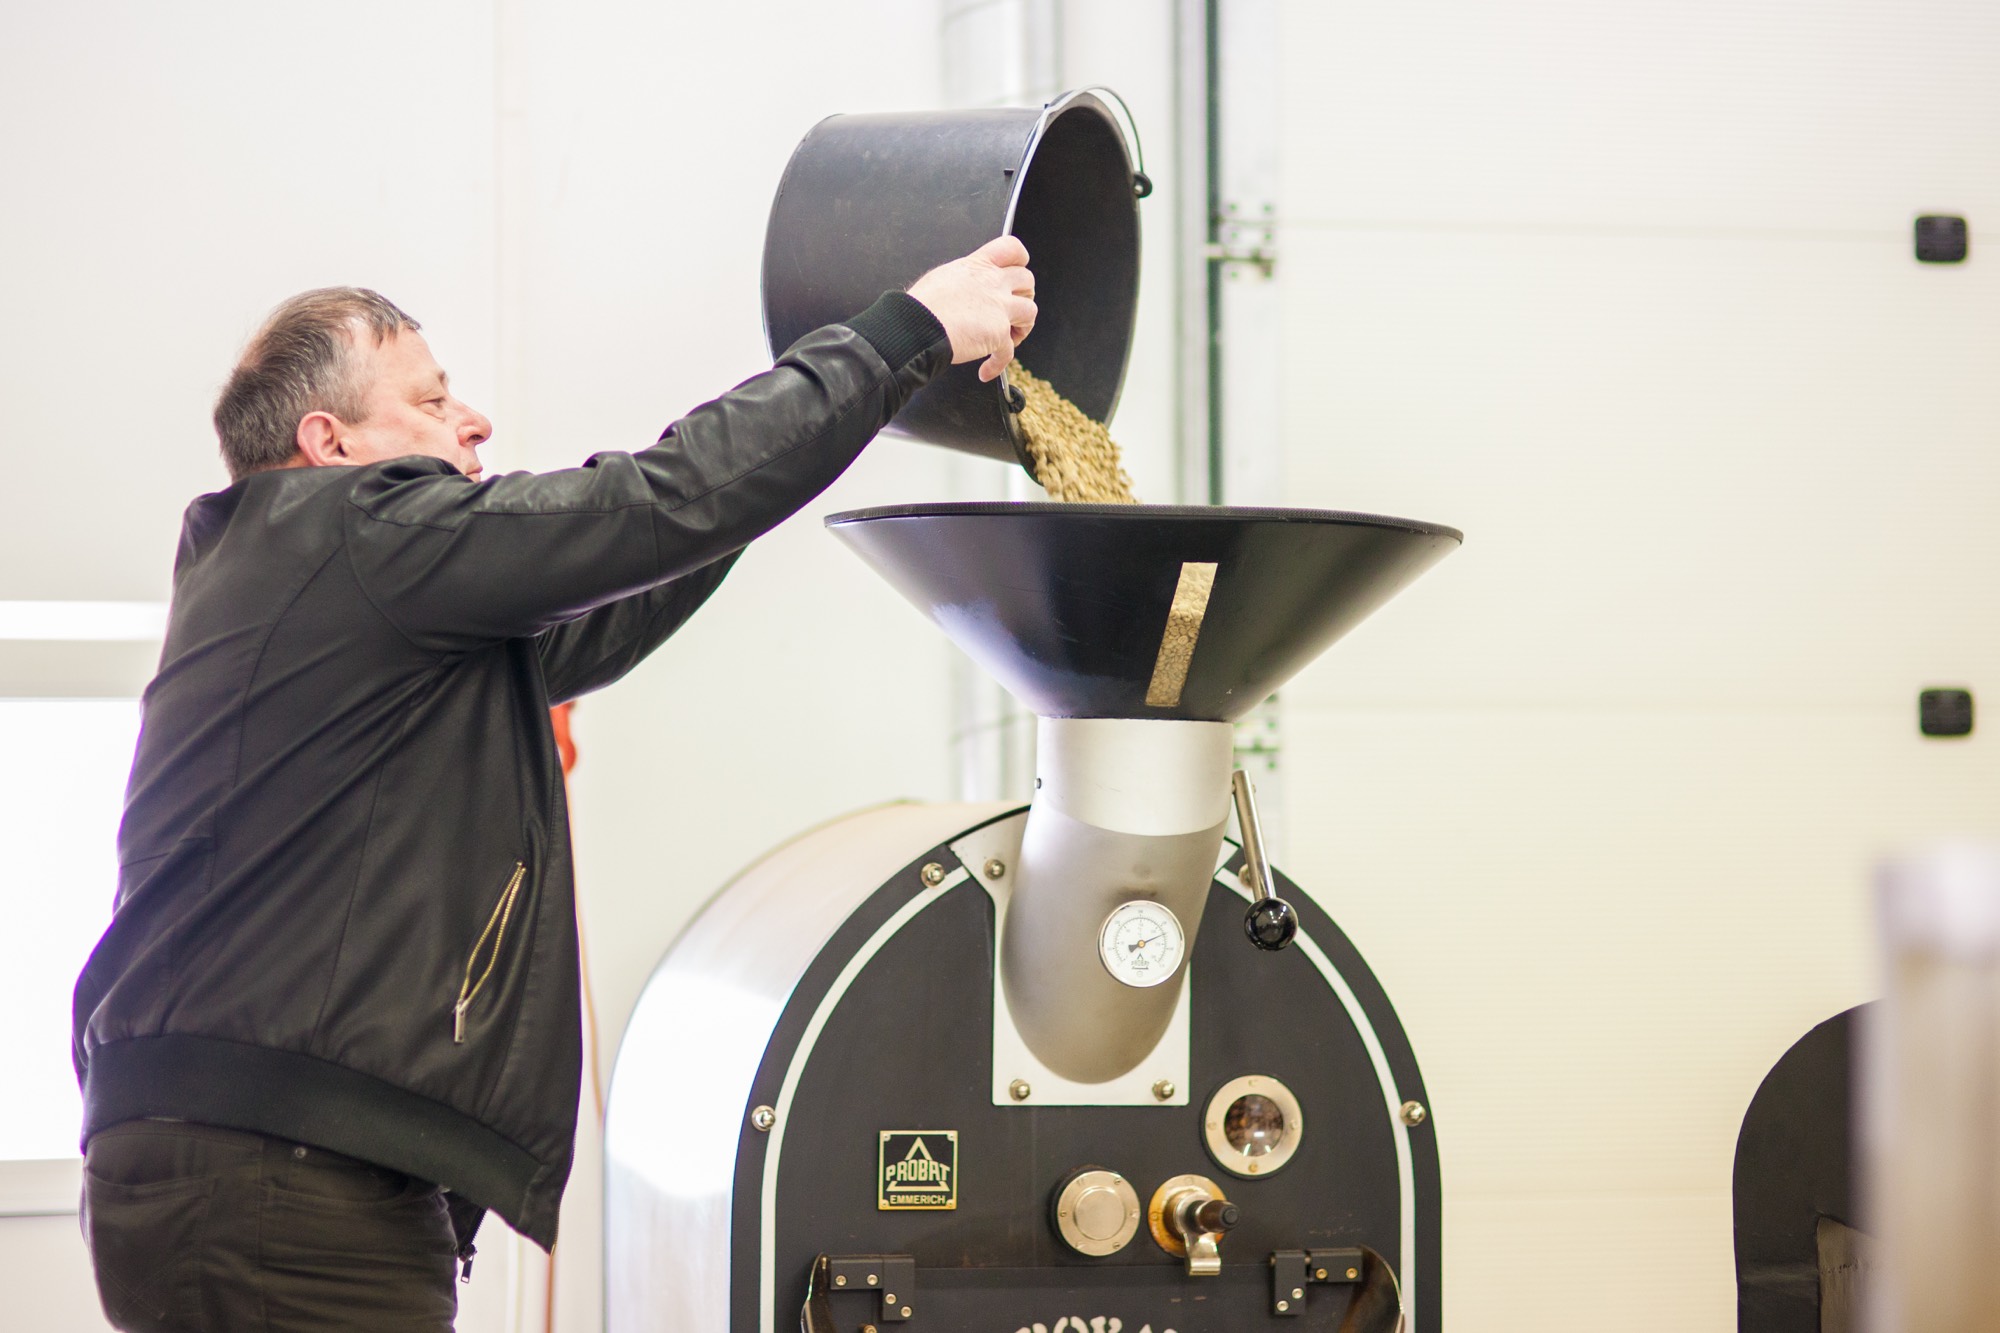 HARING KAFFEE - Handverlesene Kaffeesorten und schonende Röstung